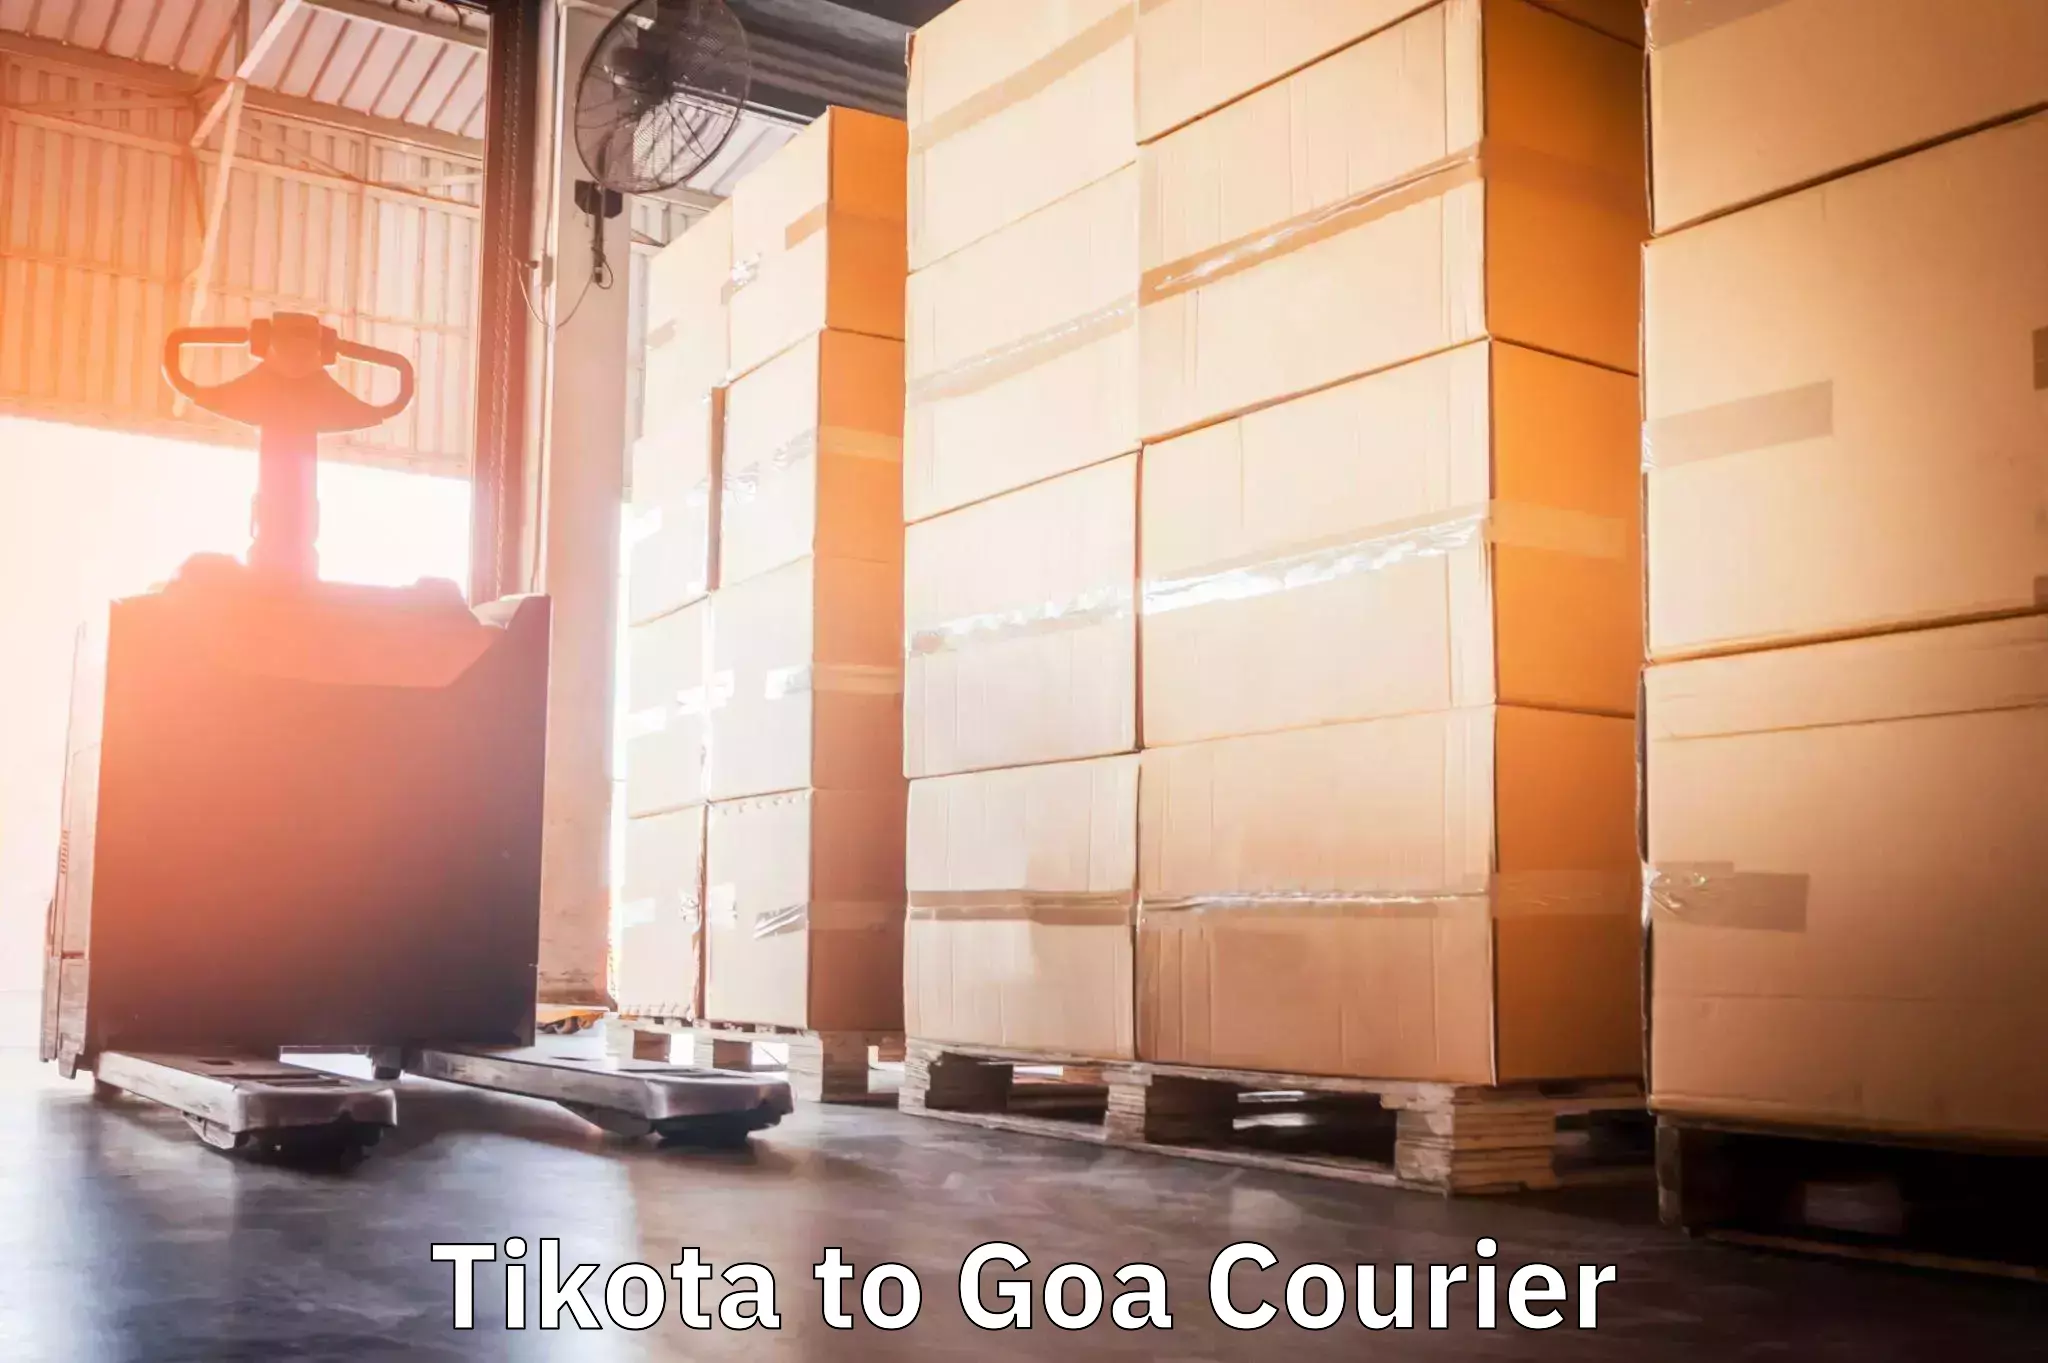 Courier service efficiency Tikota to Goa